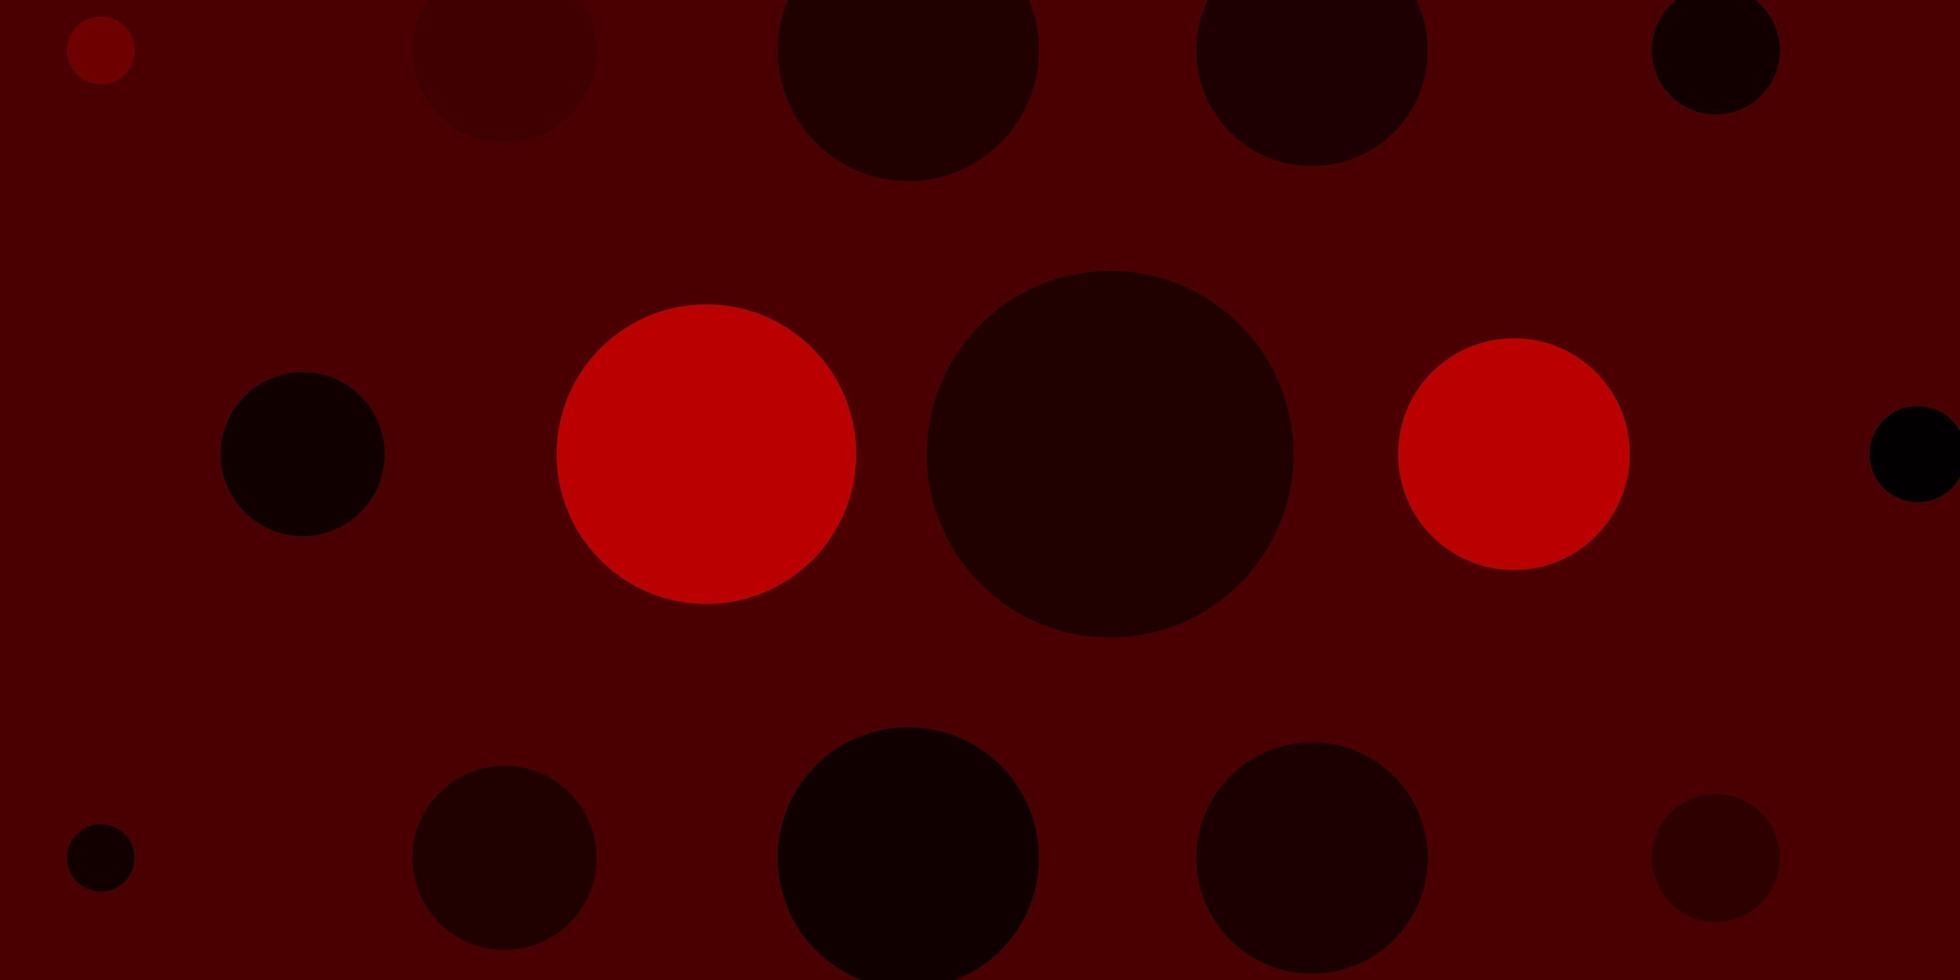 diseño de vector rojo claro con formas de círculo ilustración abstracta con manchas de colores en estilo de la naturaleza nueva plantilla para un libro de marca